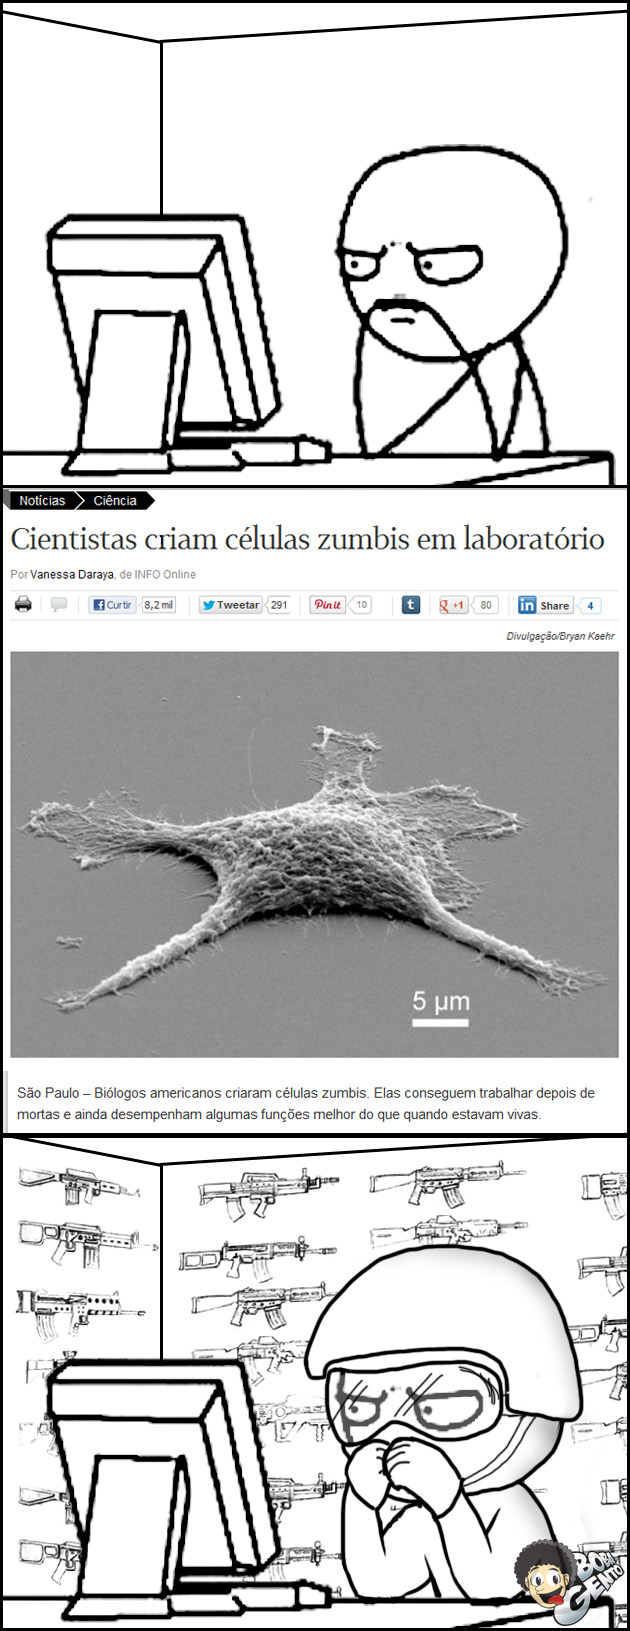 CELULA ZUMBI Cientistas criam células zumbis em laboratório